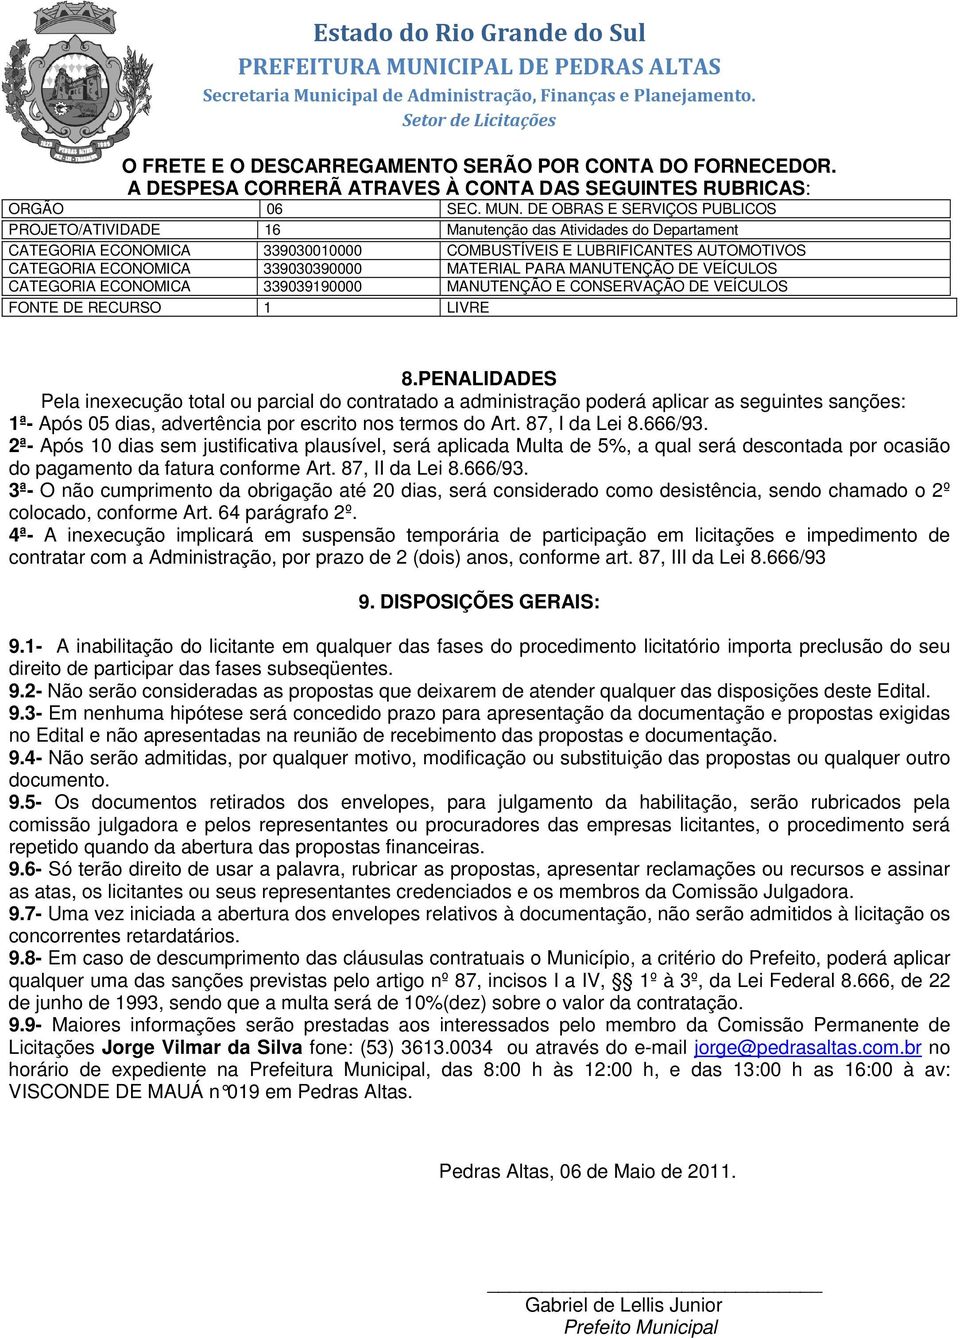 MATERIAL PARA MANUTENÇÃO DE VEÍCULOS CATEGORIA ECONOMICA 339039190000 MANUTENÇÃO E CONSERVAÇÃO DE VEÍCULOS FONTE DE RECURSO 1 LIVRE 8.